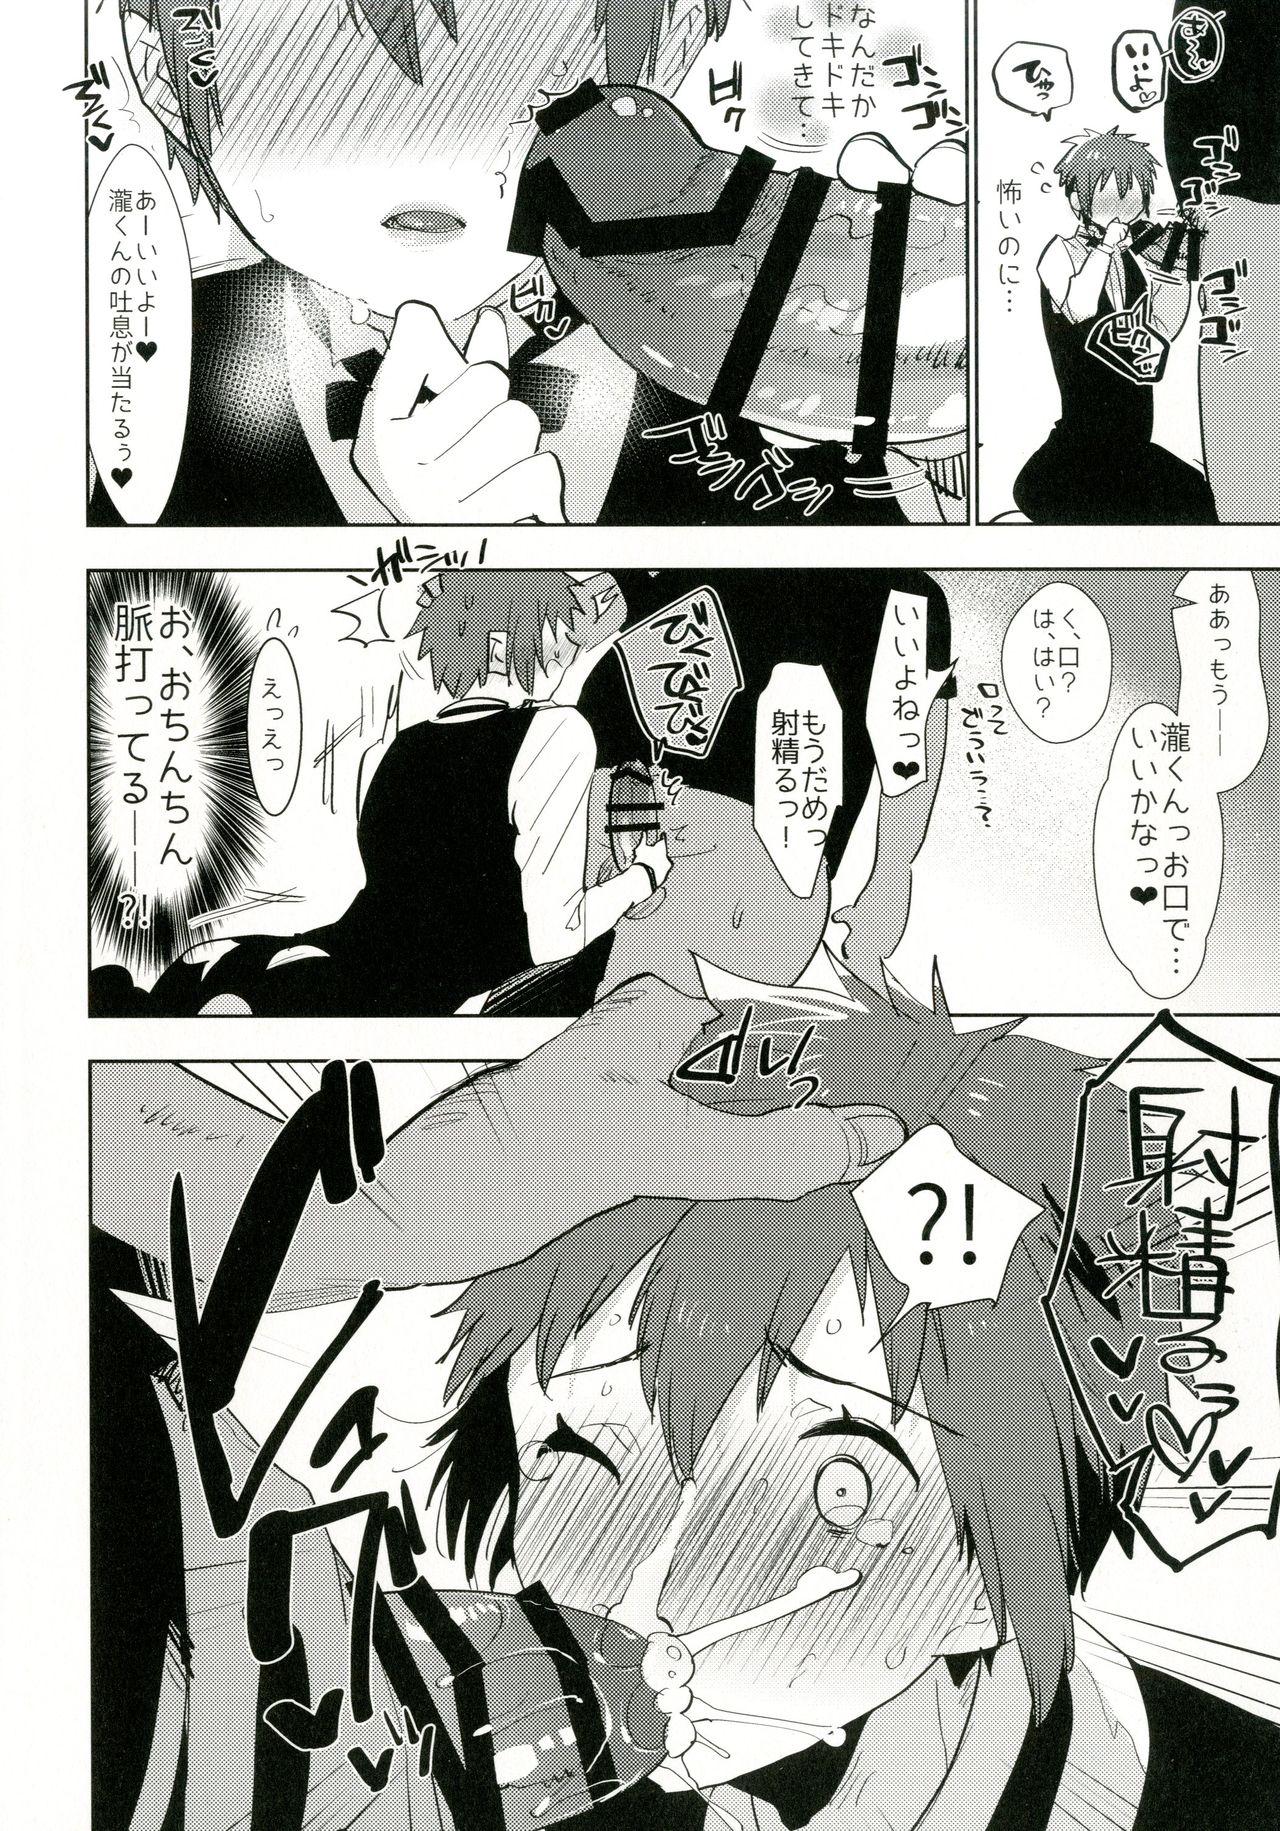 Three Some Watashi no Yume ga Owaru made. - Kimi no na wa. Spanking - Page 8